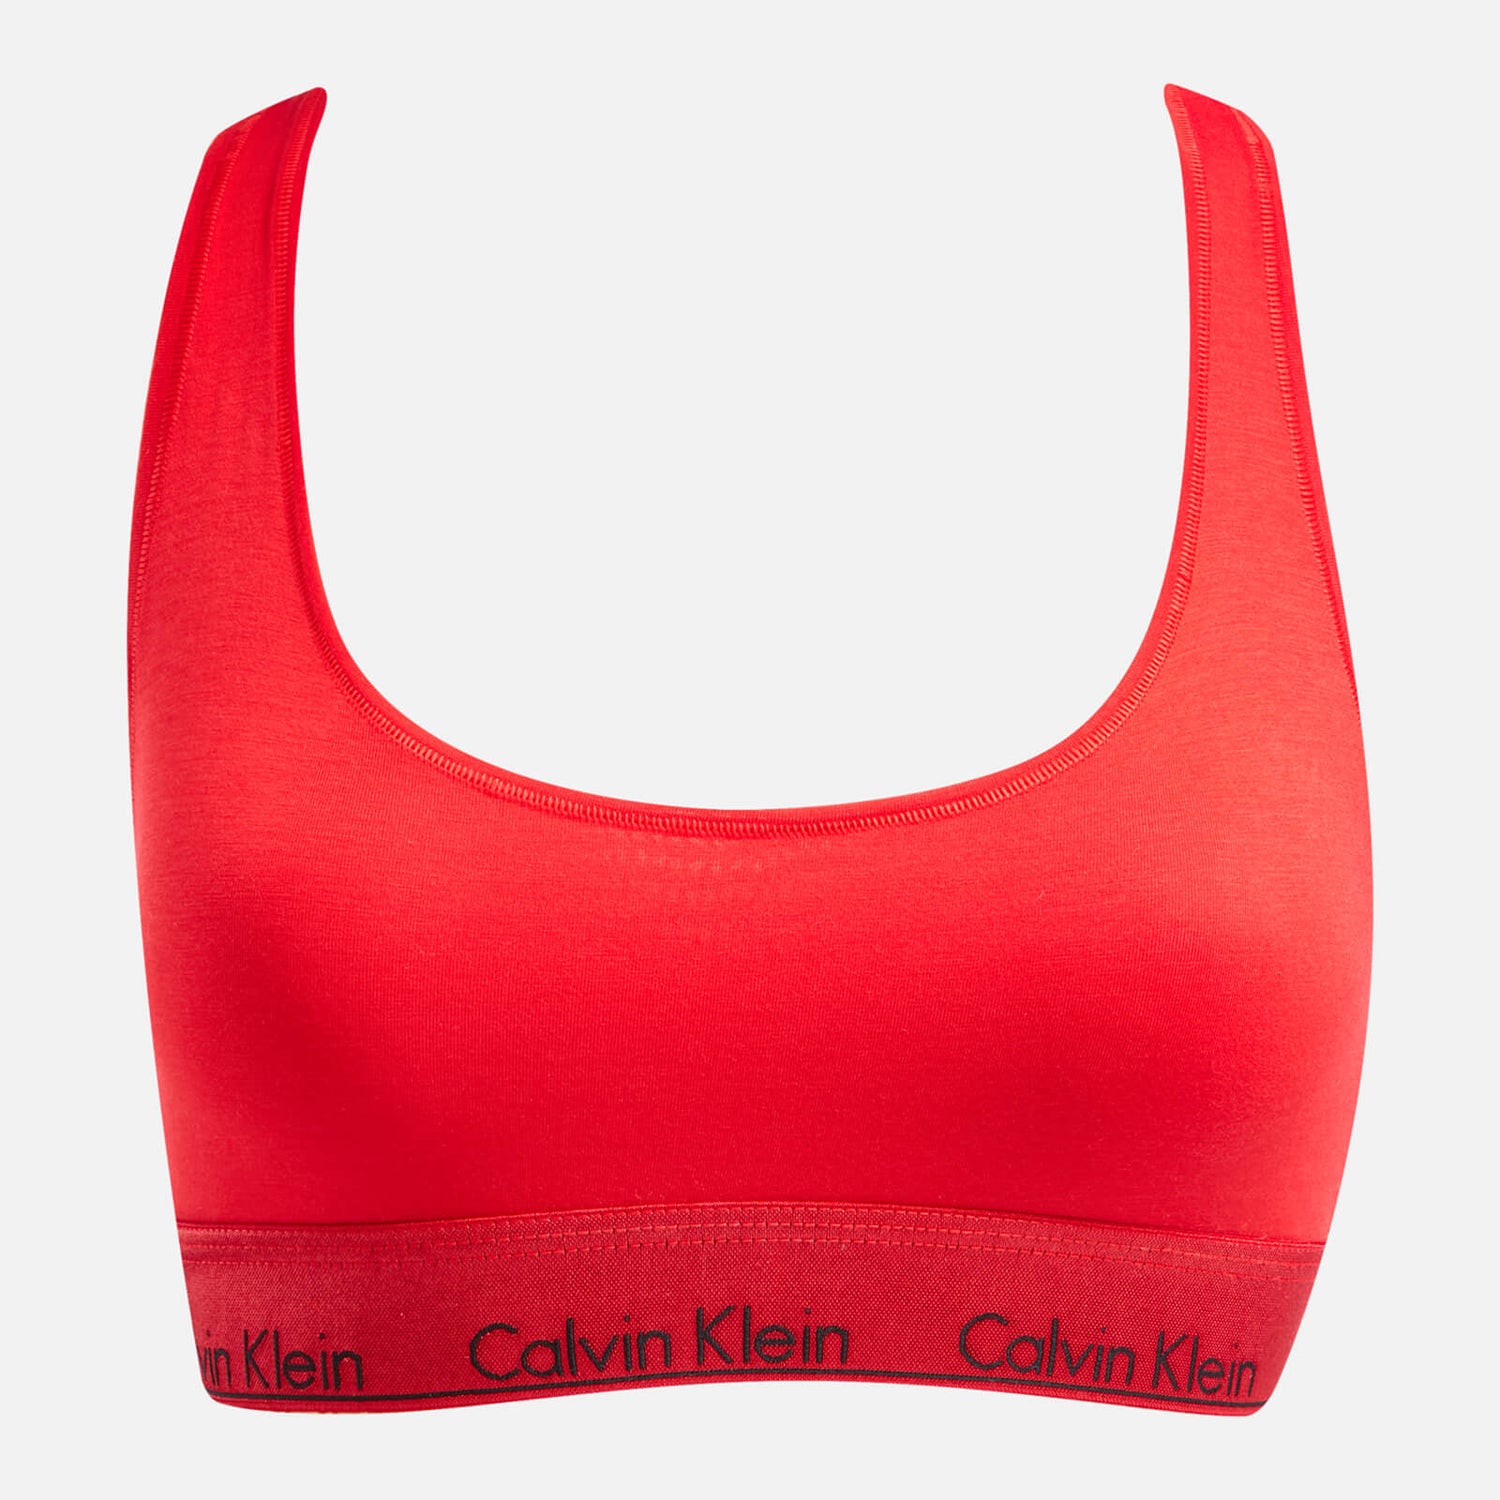 Calvin Klein Holiday Cotton-Blend Bralette - S